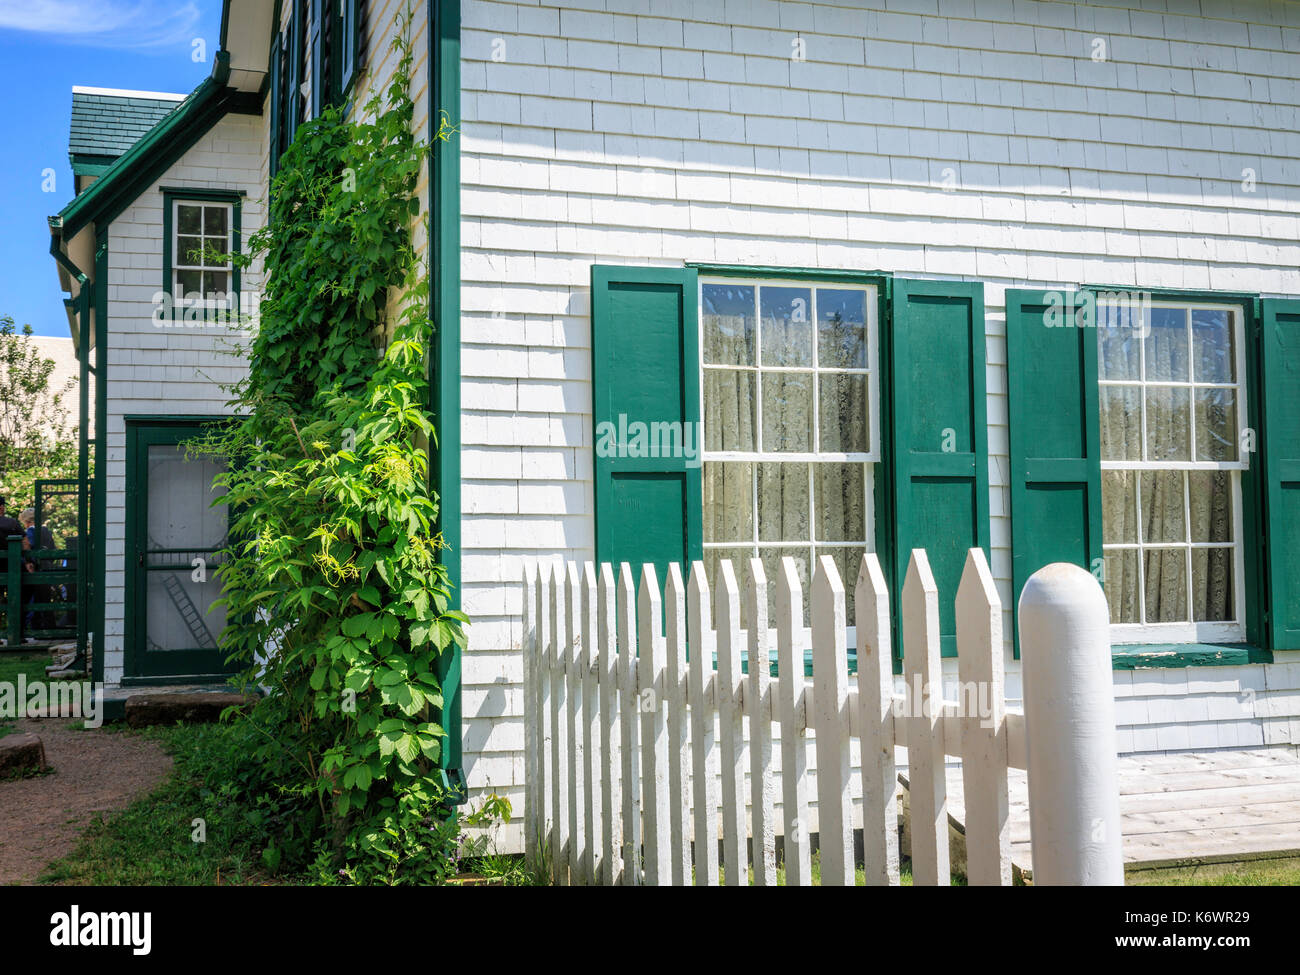 Vue côté extérieur, la maison aux pignons verts, définition de L.M. Montgomery, Anne of Green Gables romans Banque D'Images